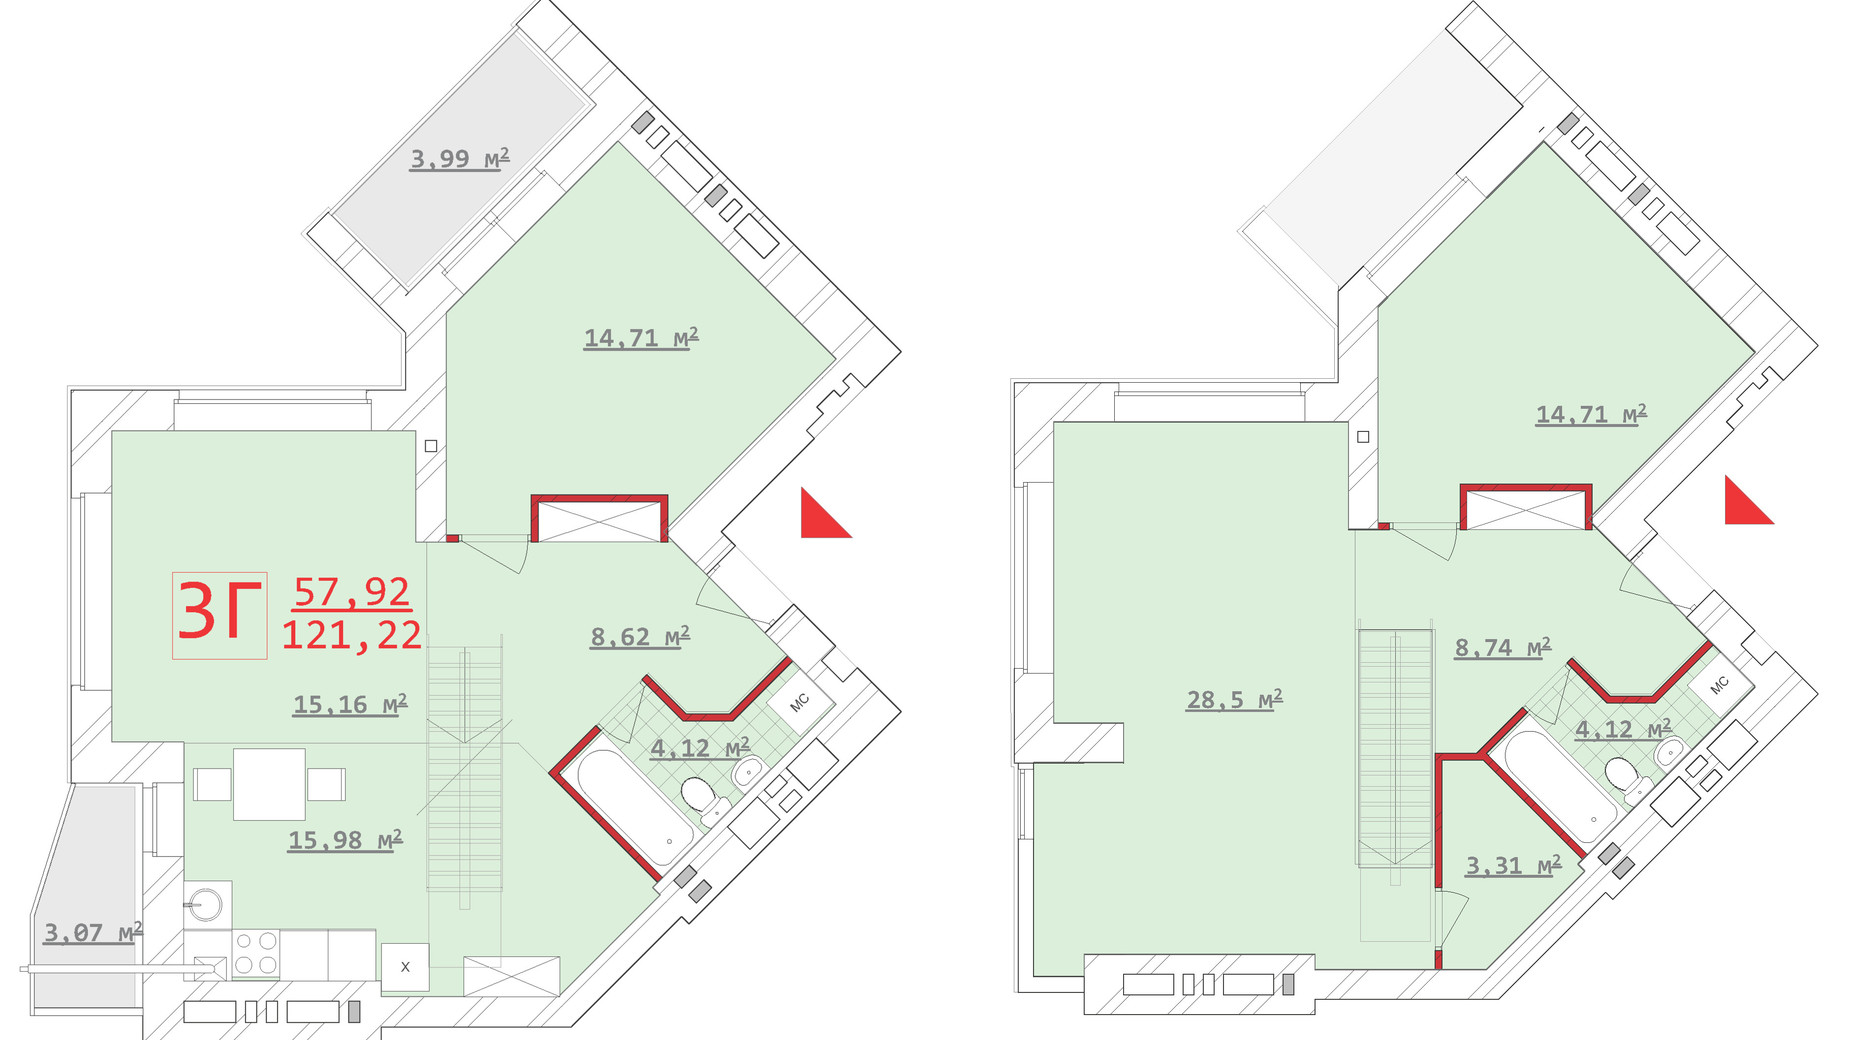 Планировка много­уровневой квартиры в ЖК Новый дом Котлова 121.22 м², фото 286673